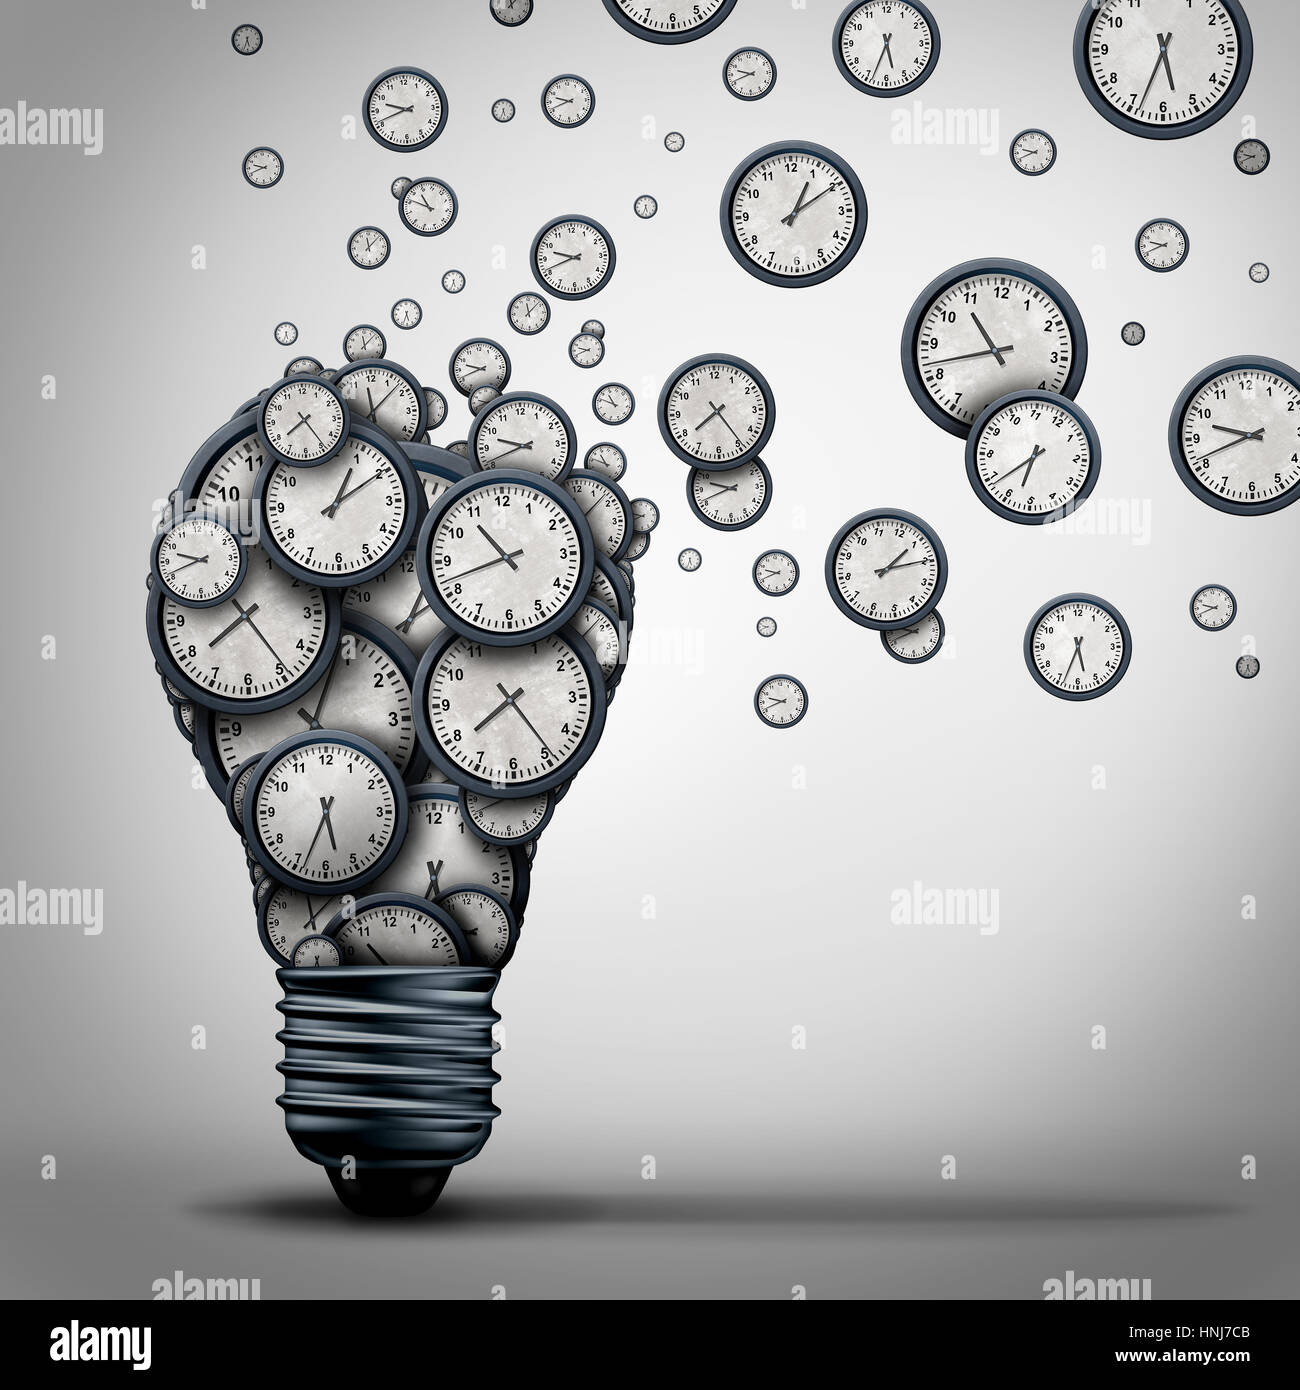 Zeit, die marketing-Idee Business Trainings Bildung als eine Gruppe von Uhr Objekten geformt wie eine Glühbirne, die sich ausbreitet. Stockfoto